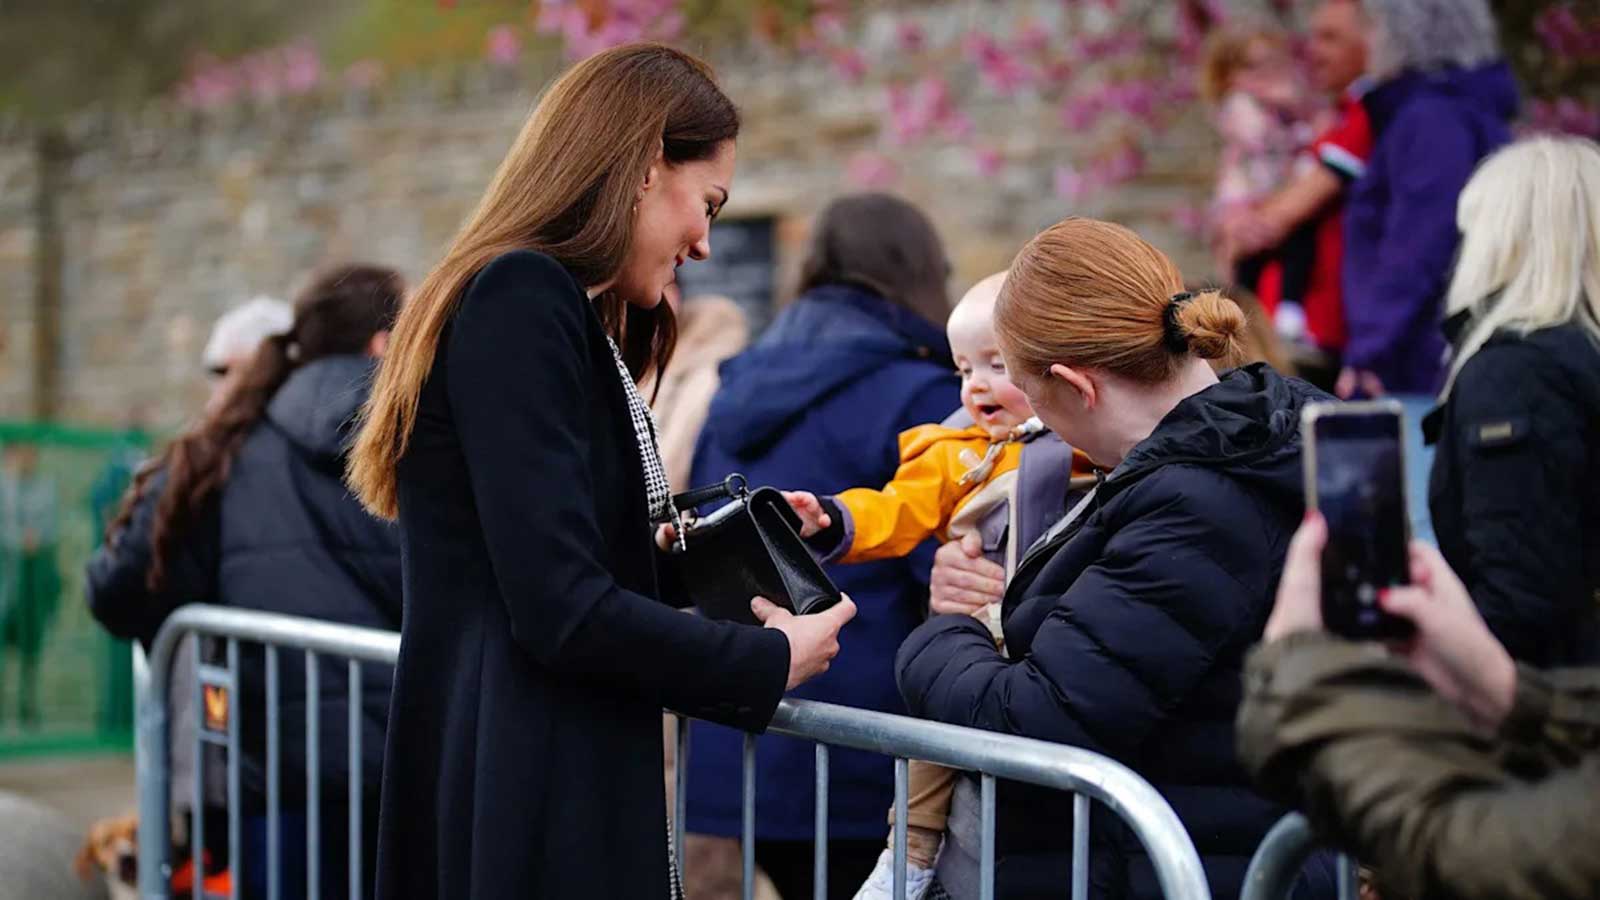 طفل يضع الأميرة البريطانية كيت في موقف طريف